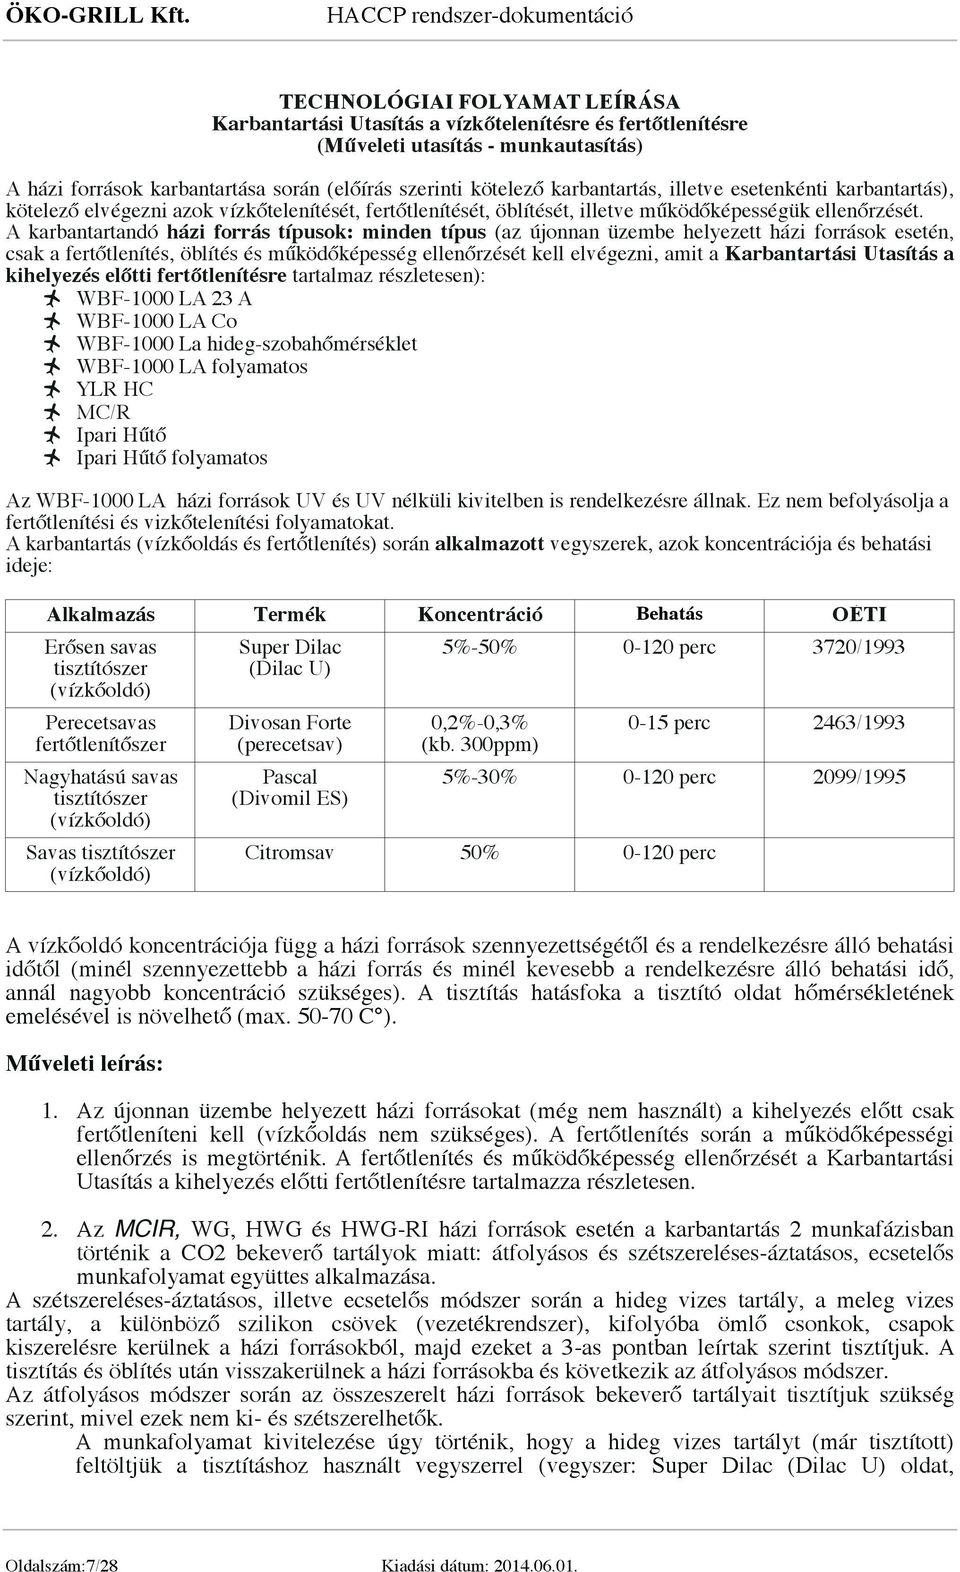 HACCP TERVDOKUMENTÁCIÓ - PDF Ingyenes letöltés